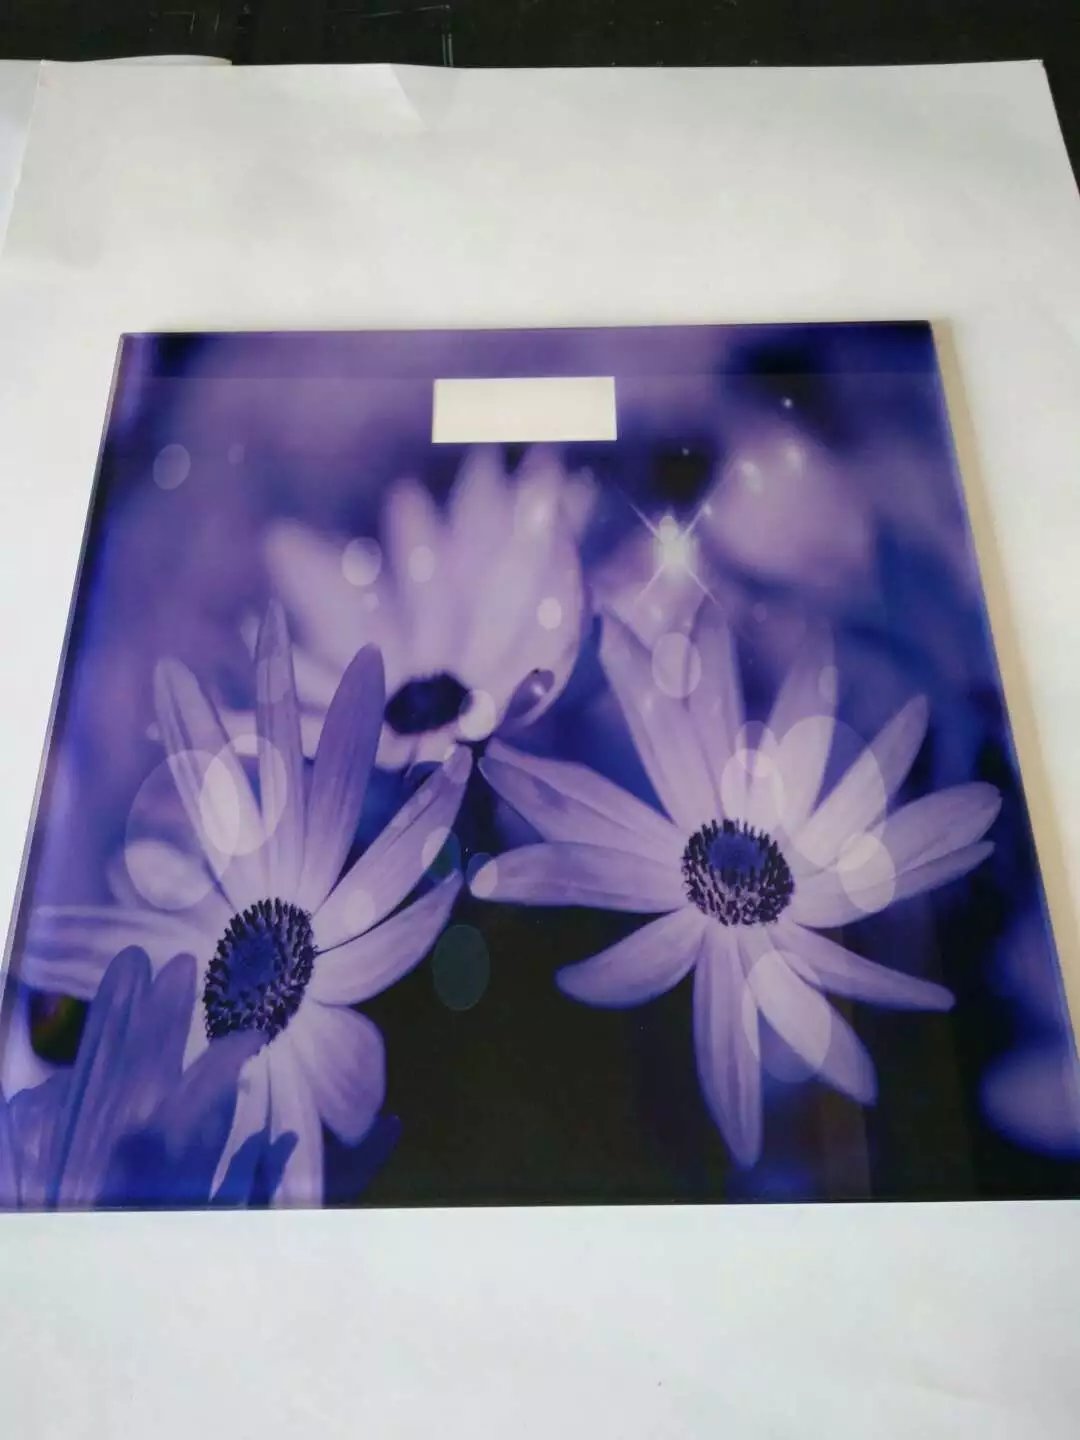 玻璃/钢化玻璃/有机玻璃UV打印 批量UV喷绘 高清平面打印喷绘制作图片